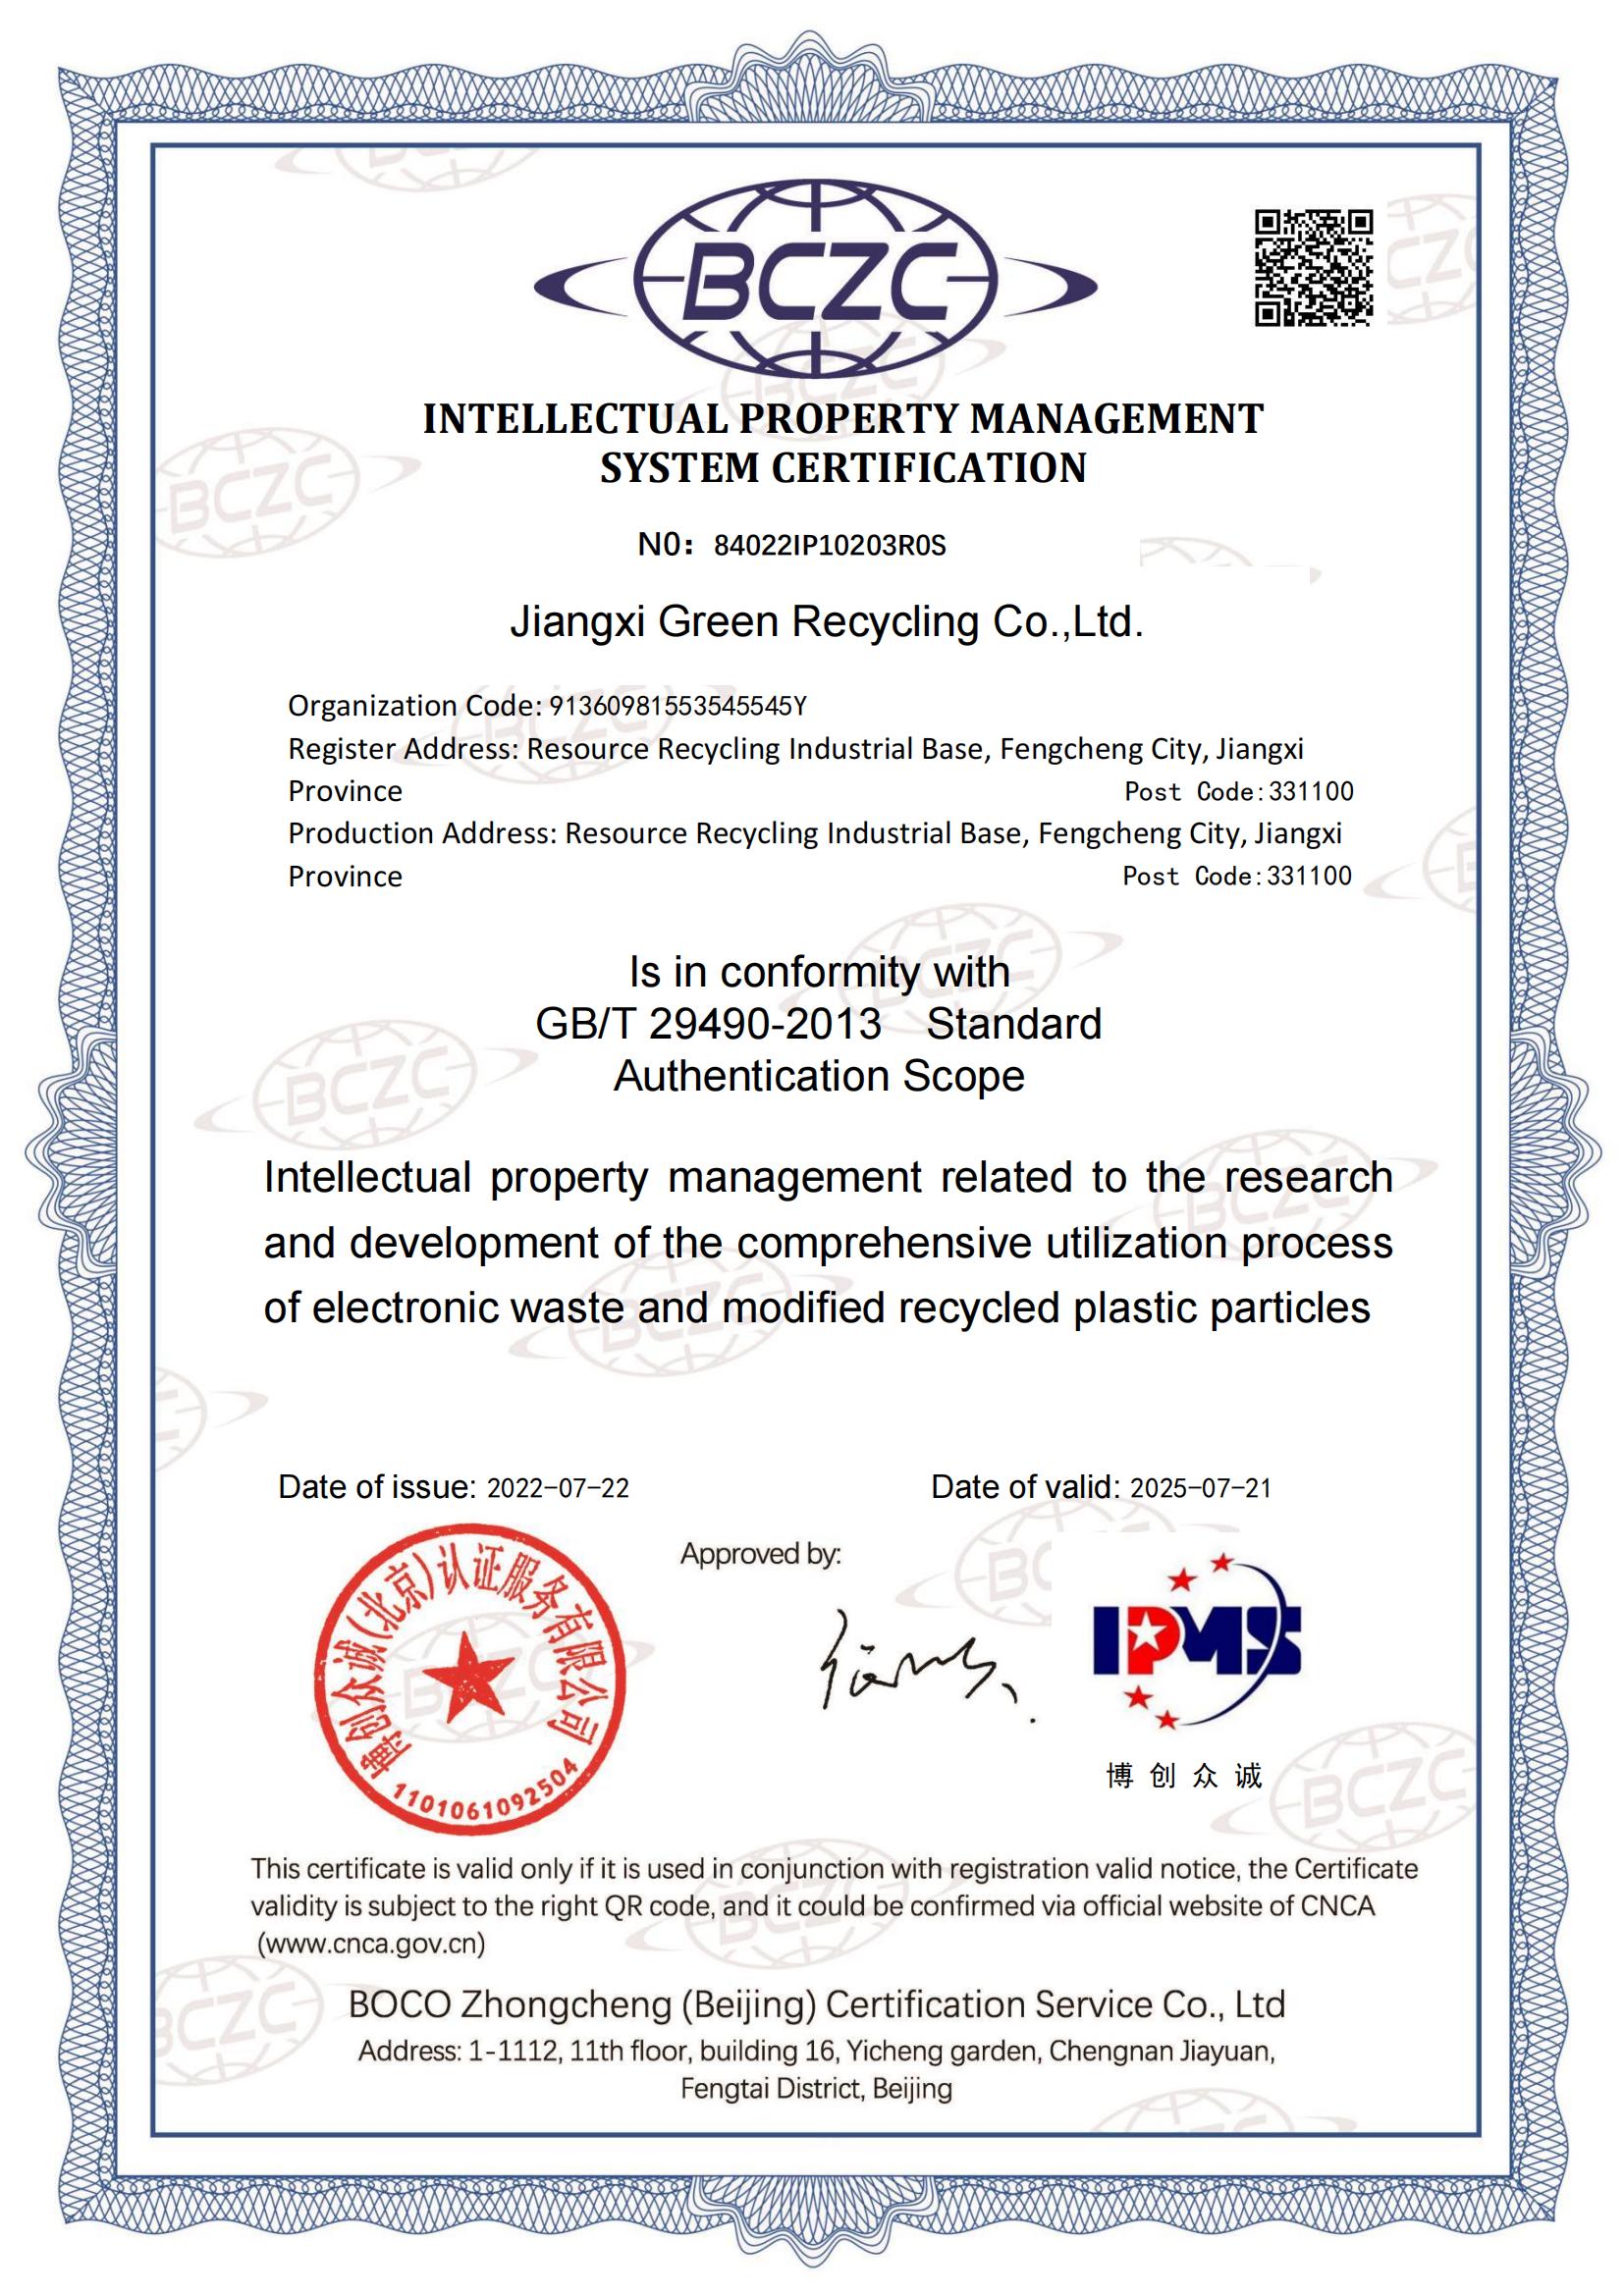 江西格林循环产业股份有限公司--IPMS证书中英文_01.jpg